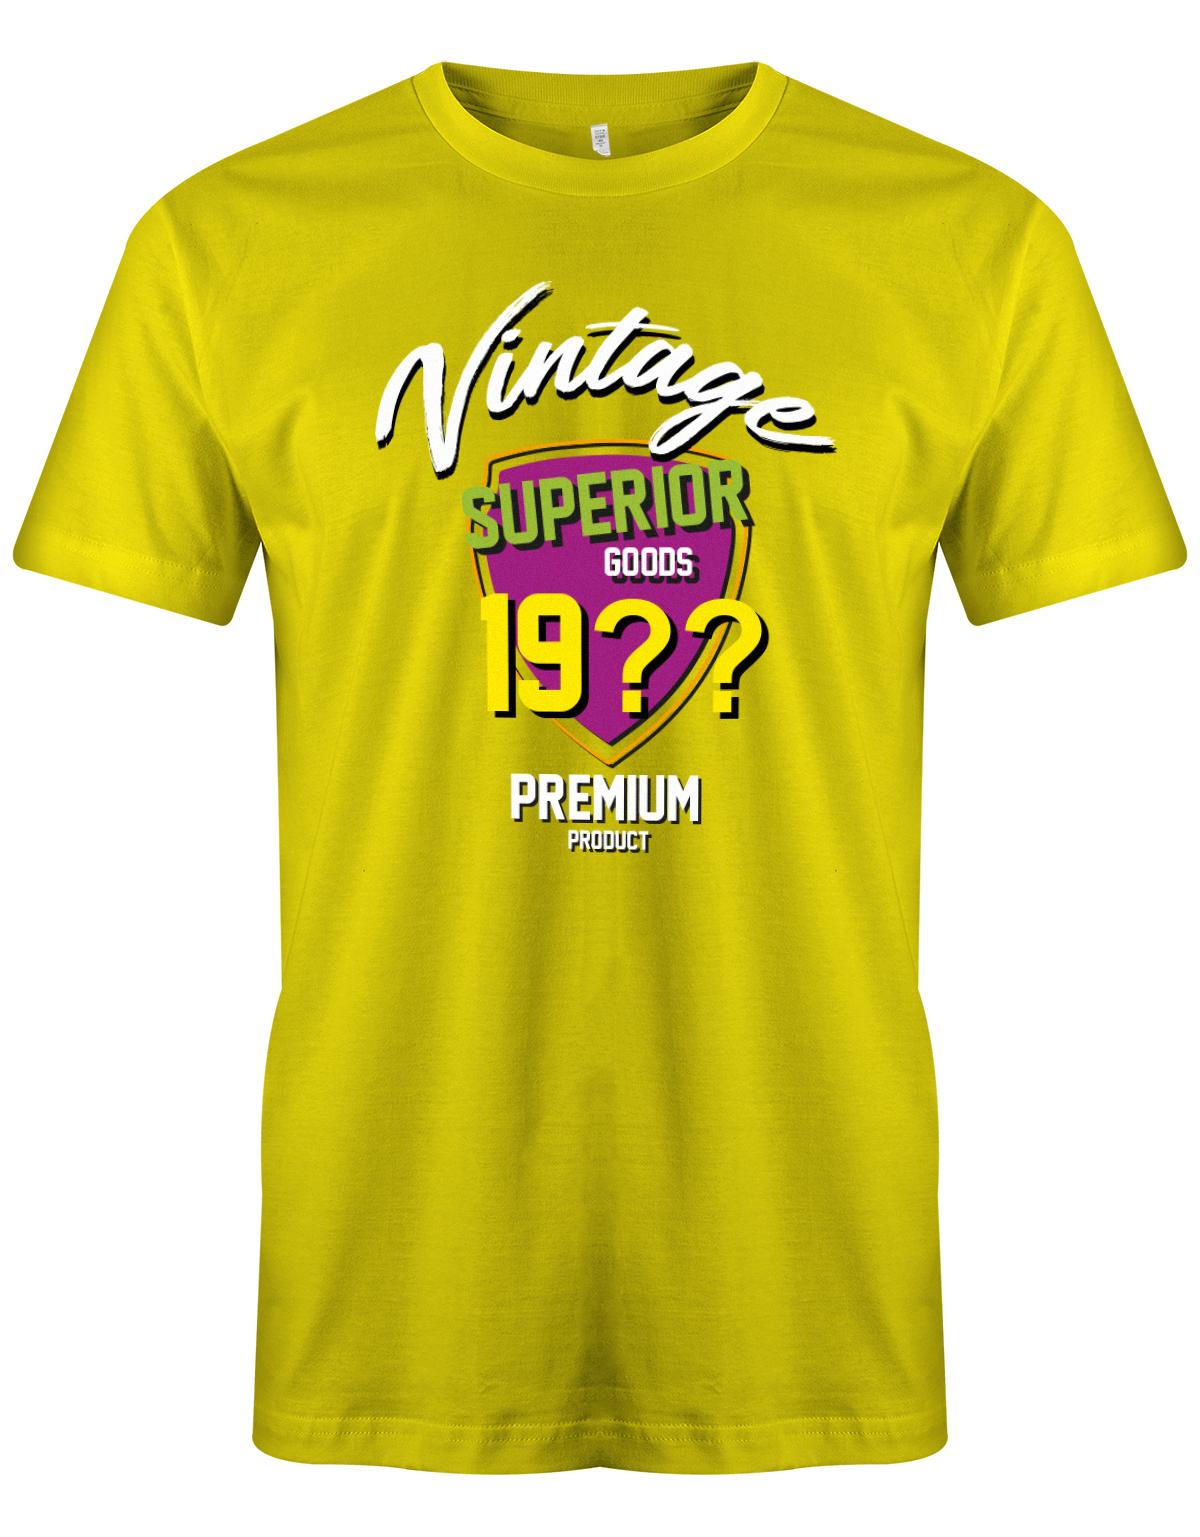 Geburtstag Tshirt für Männer Vintage Superior goods Personalisiert mit Geburtsjahr Premium Product Gelb